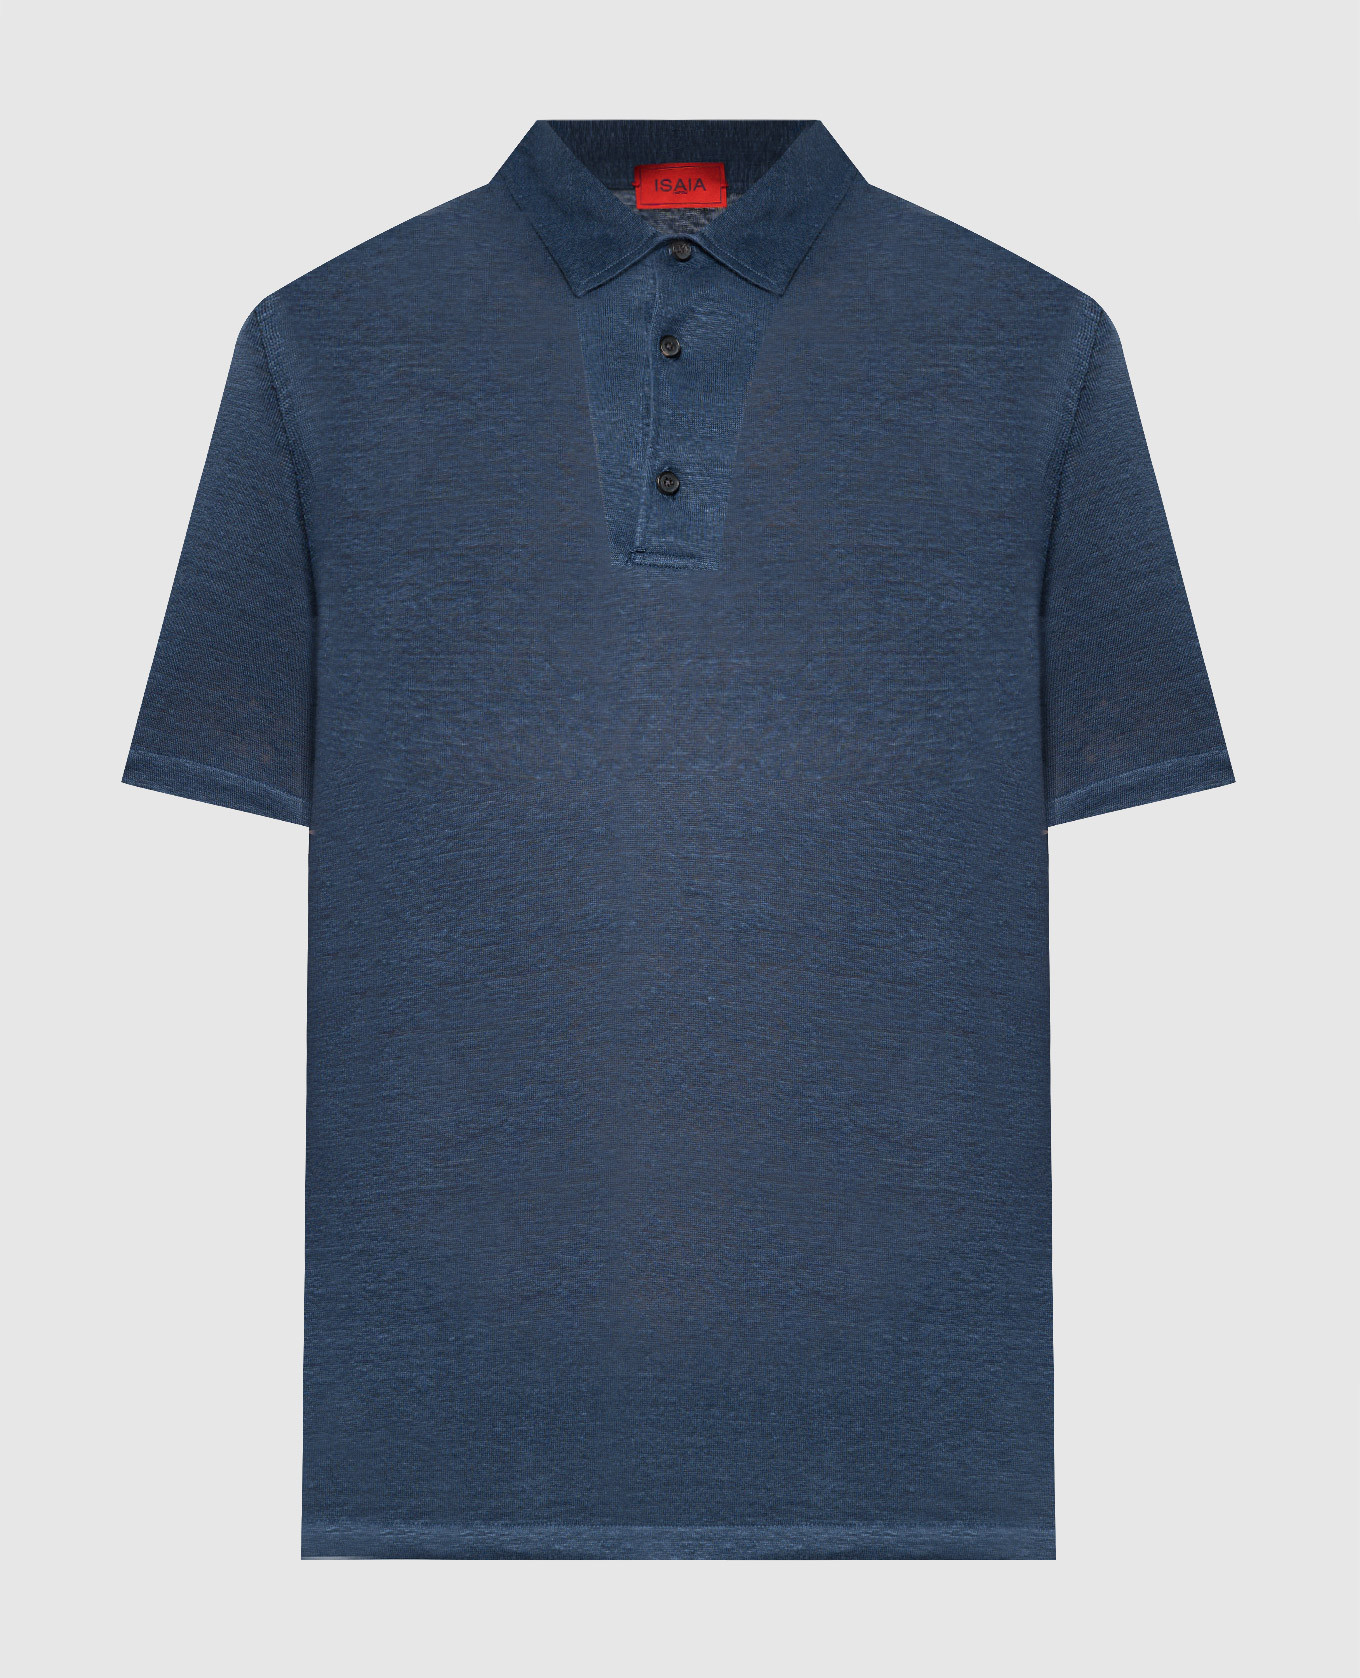 Blue linen polo shirt